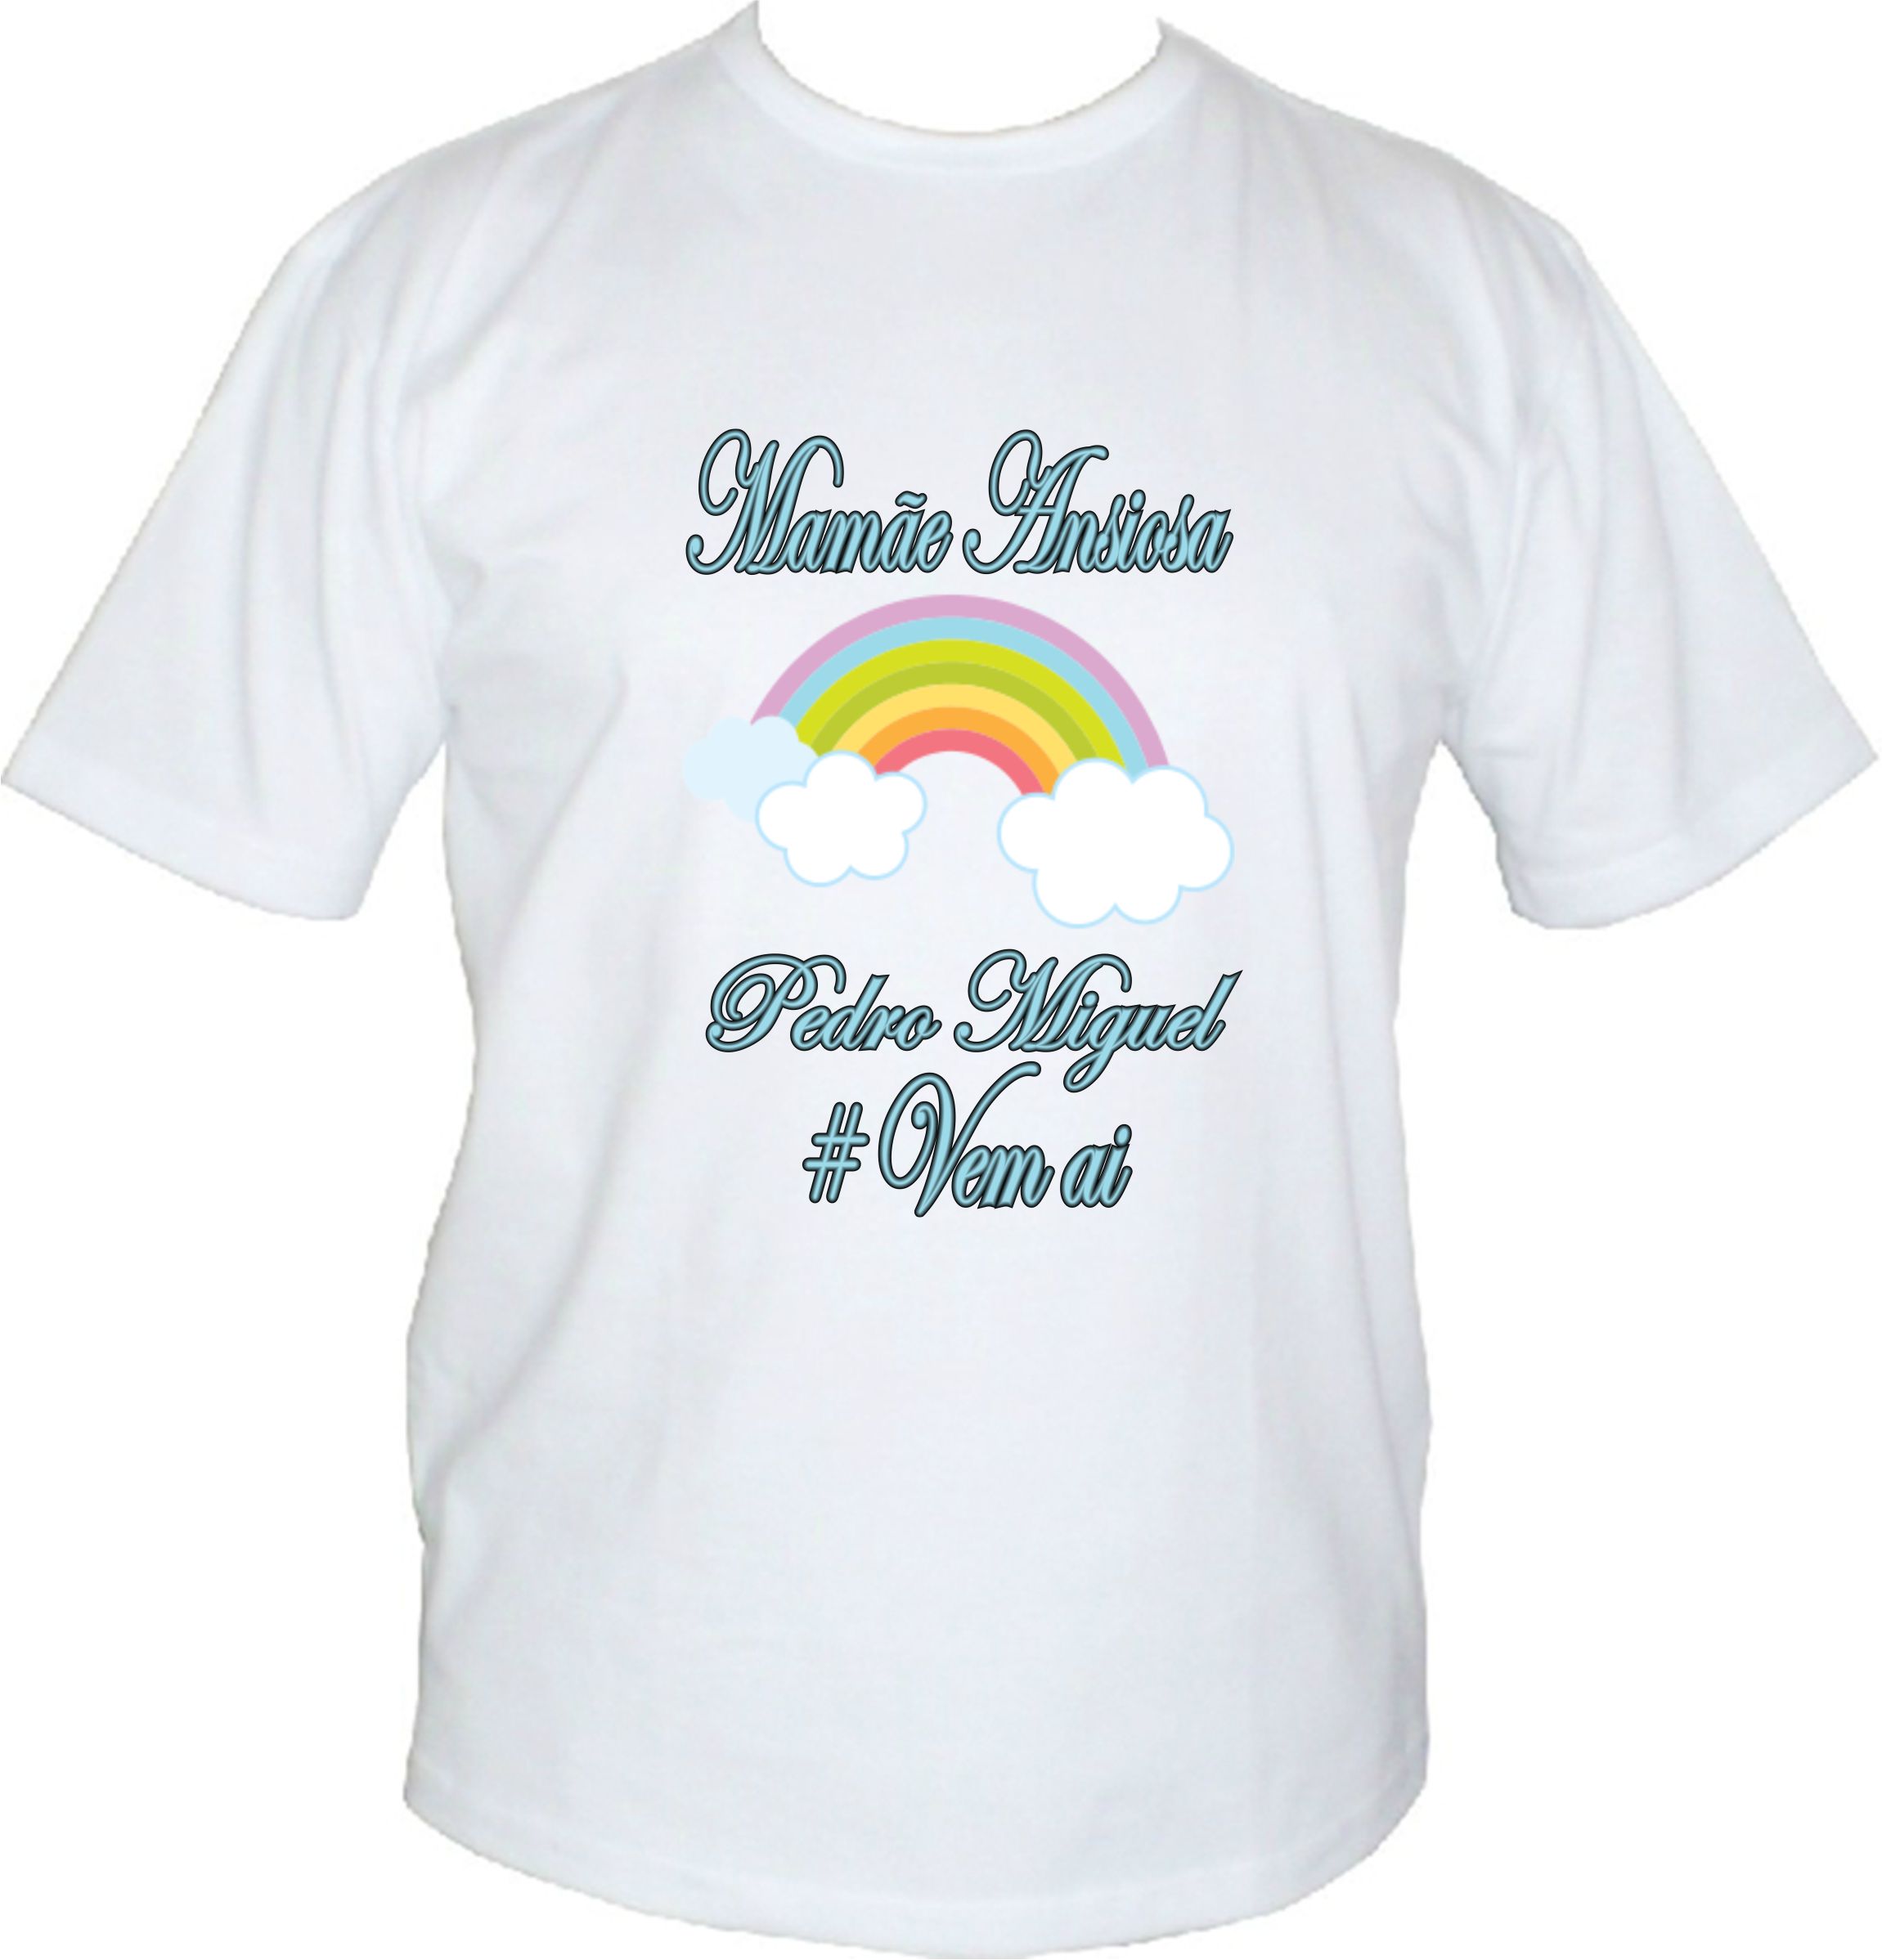 Camisetas personalizadas chá de bebê Arco Iris - Só Canecas & Personalizados